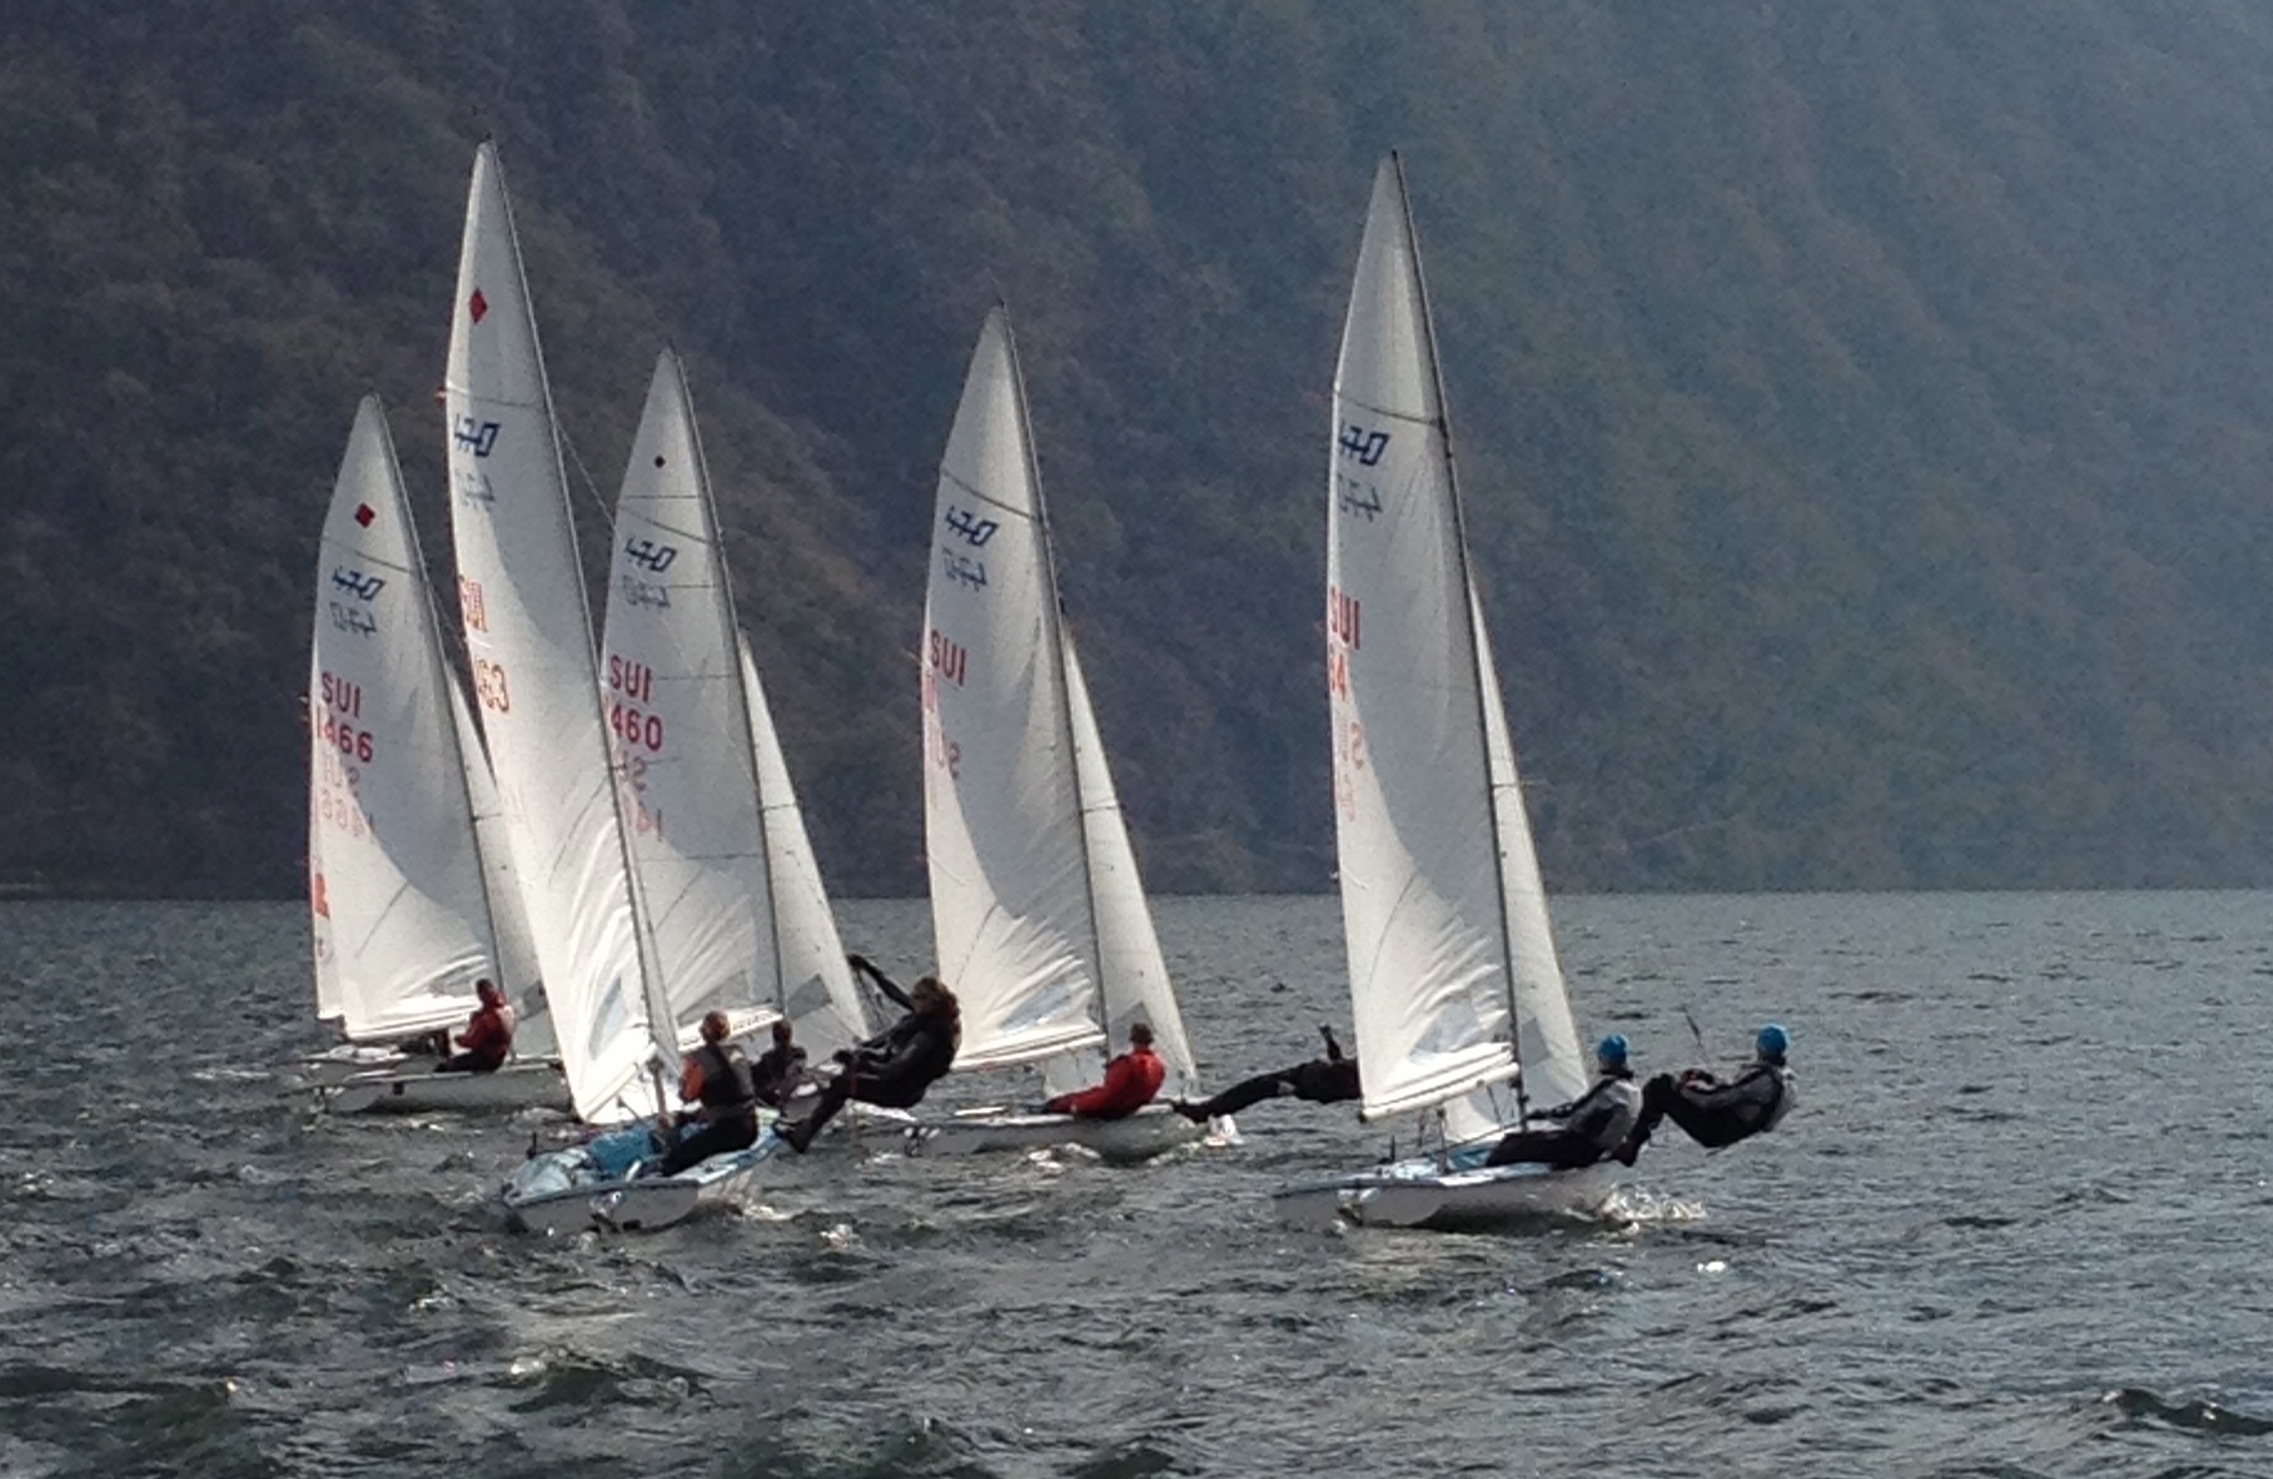  420, 470  Punktemeisterschaft  CV Lago di Lugano  Day 1